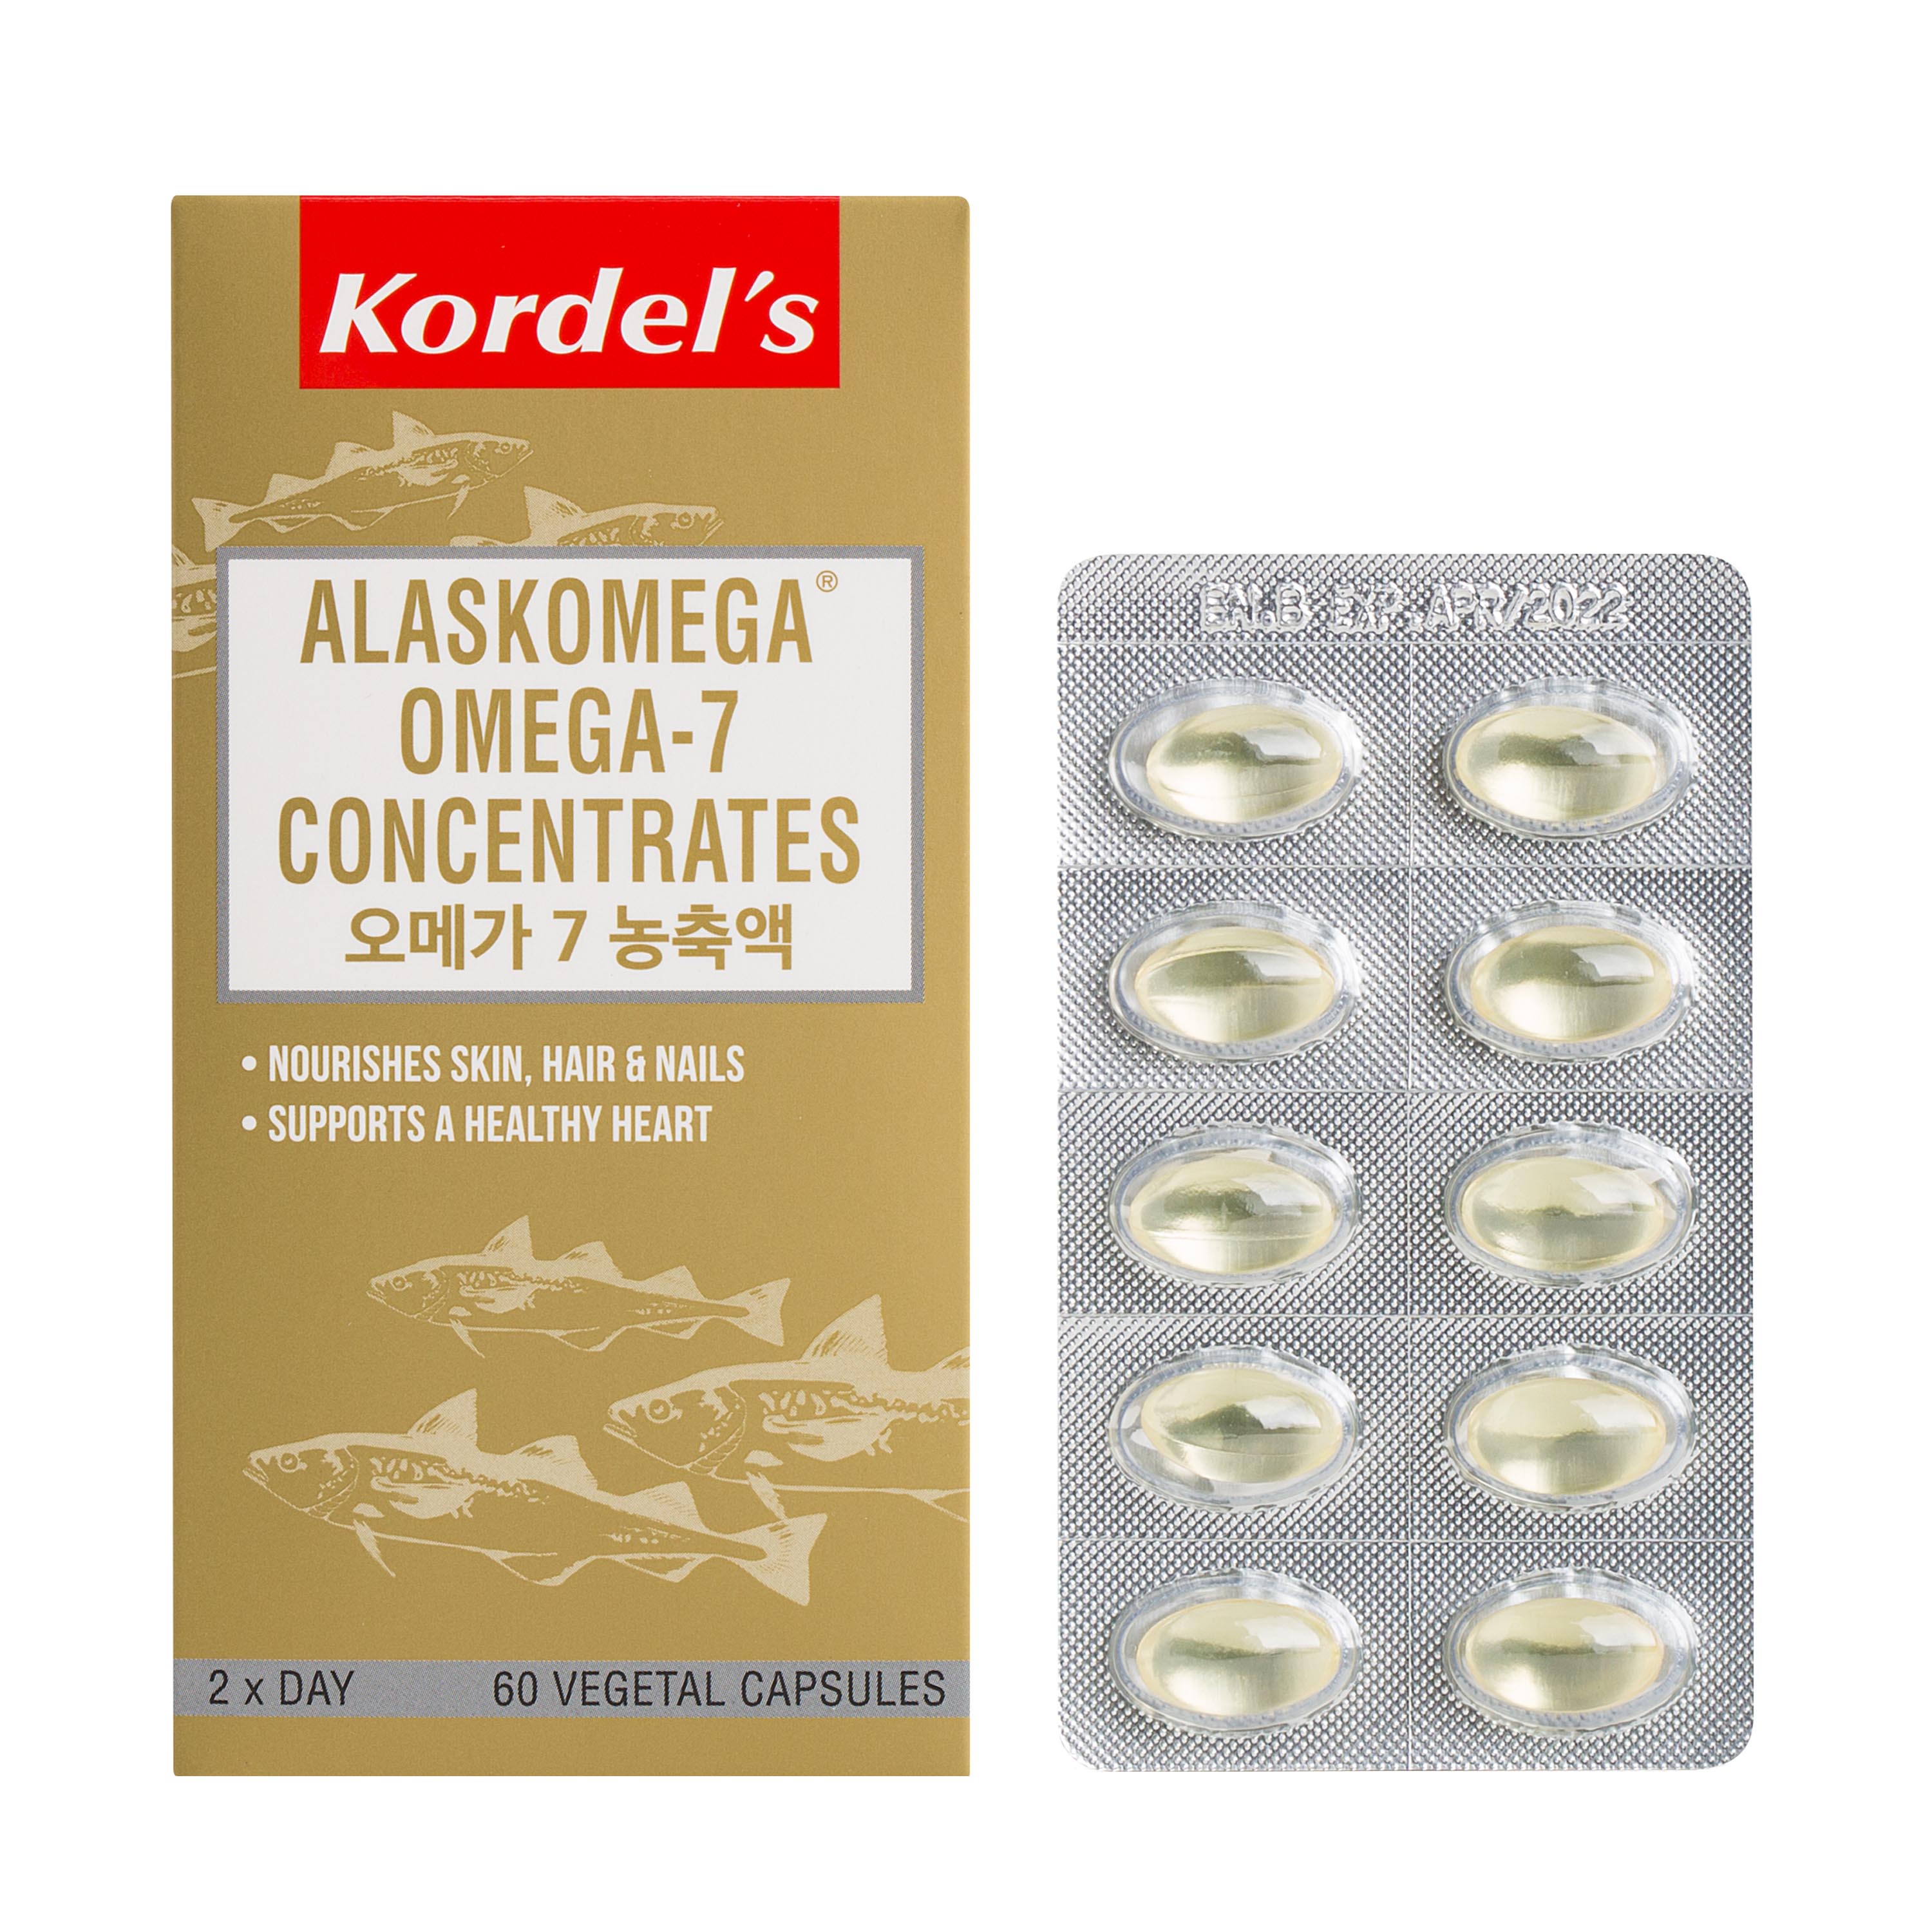 Kordel's Alaskomega Omega-7 Concentrates 60's